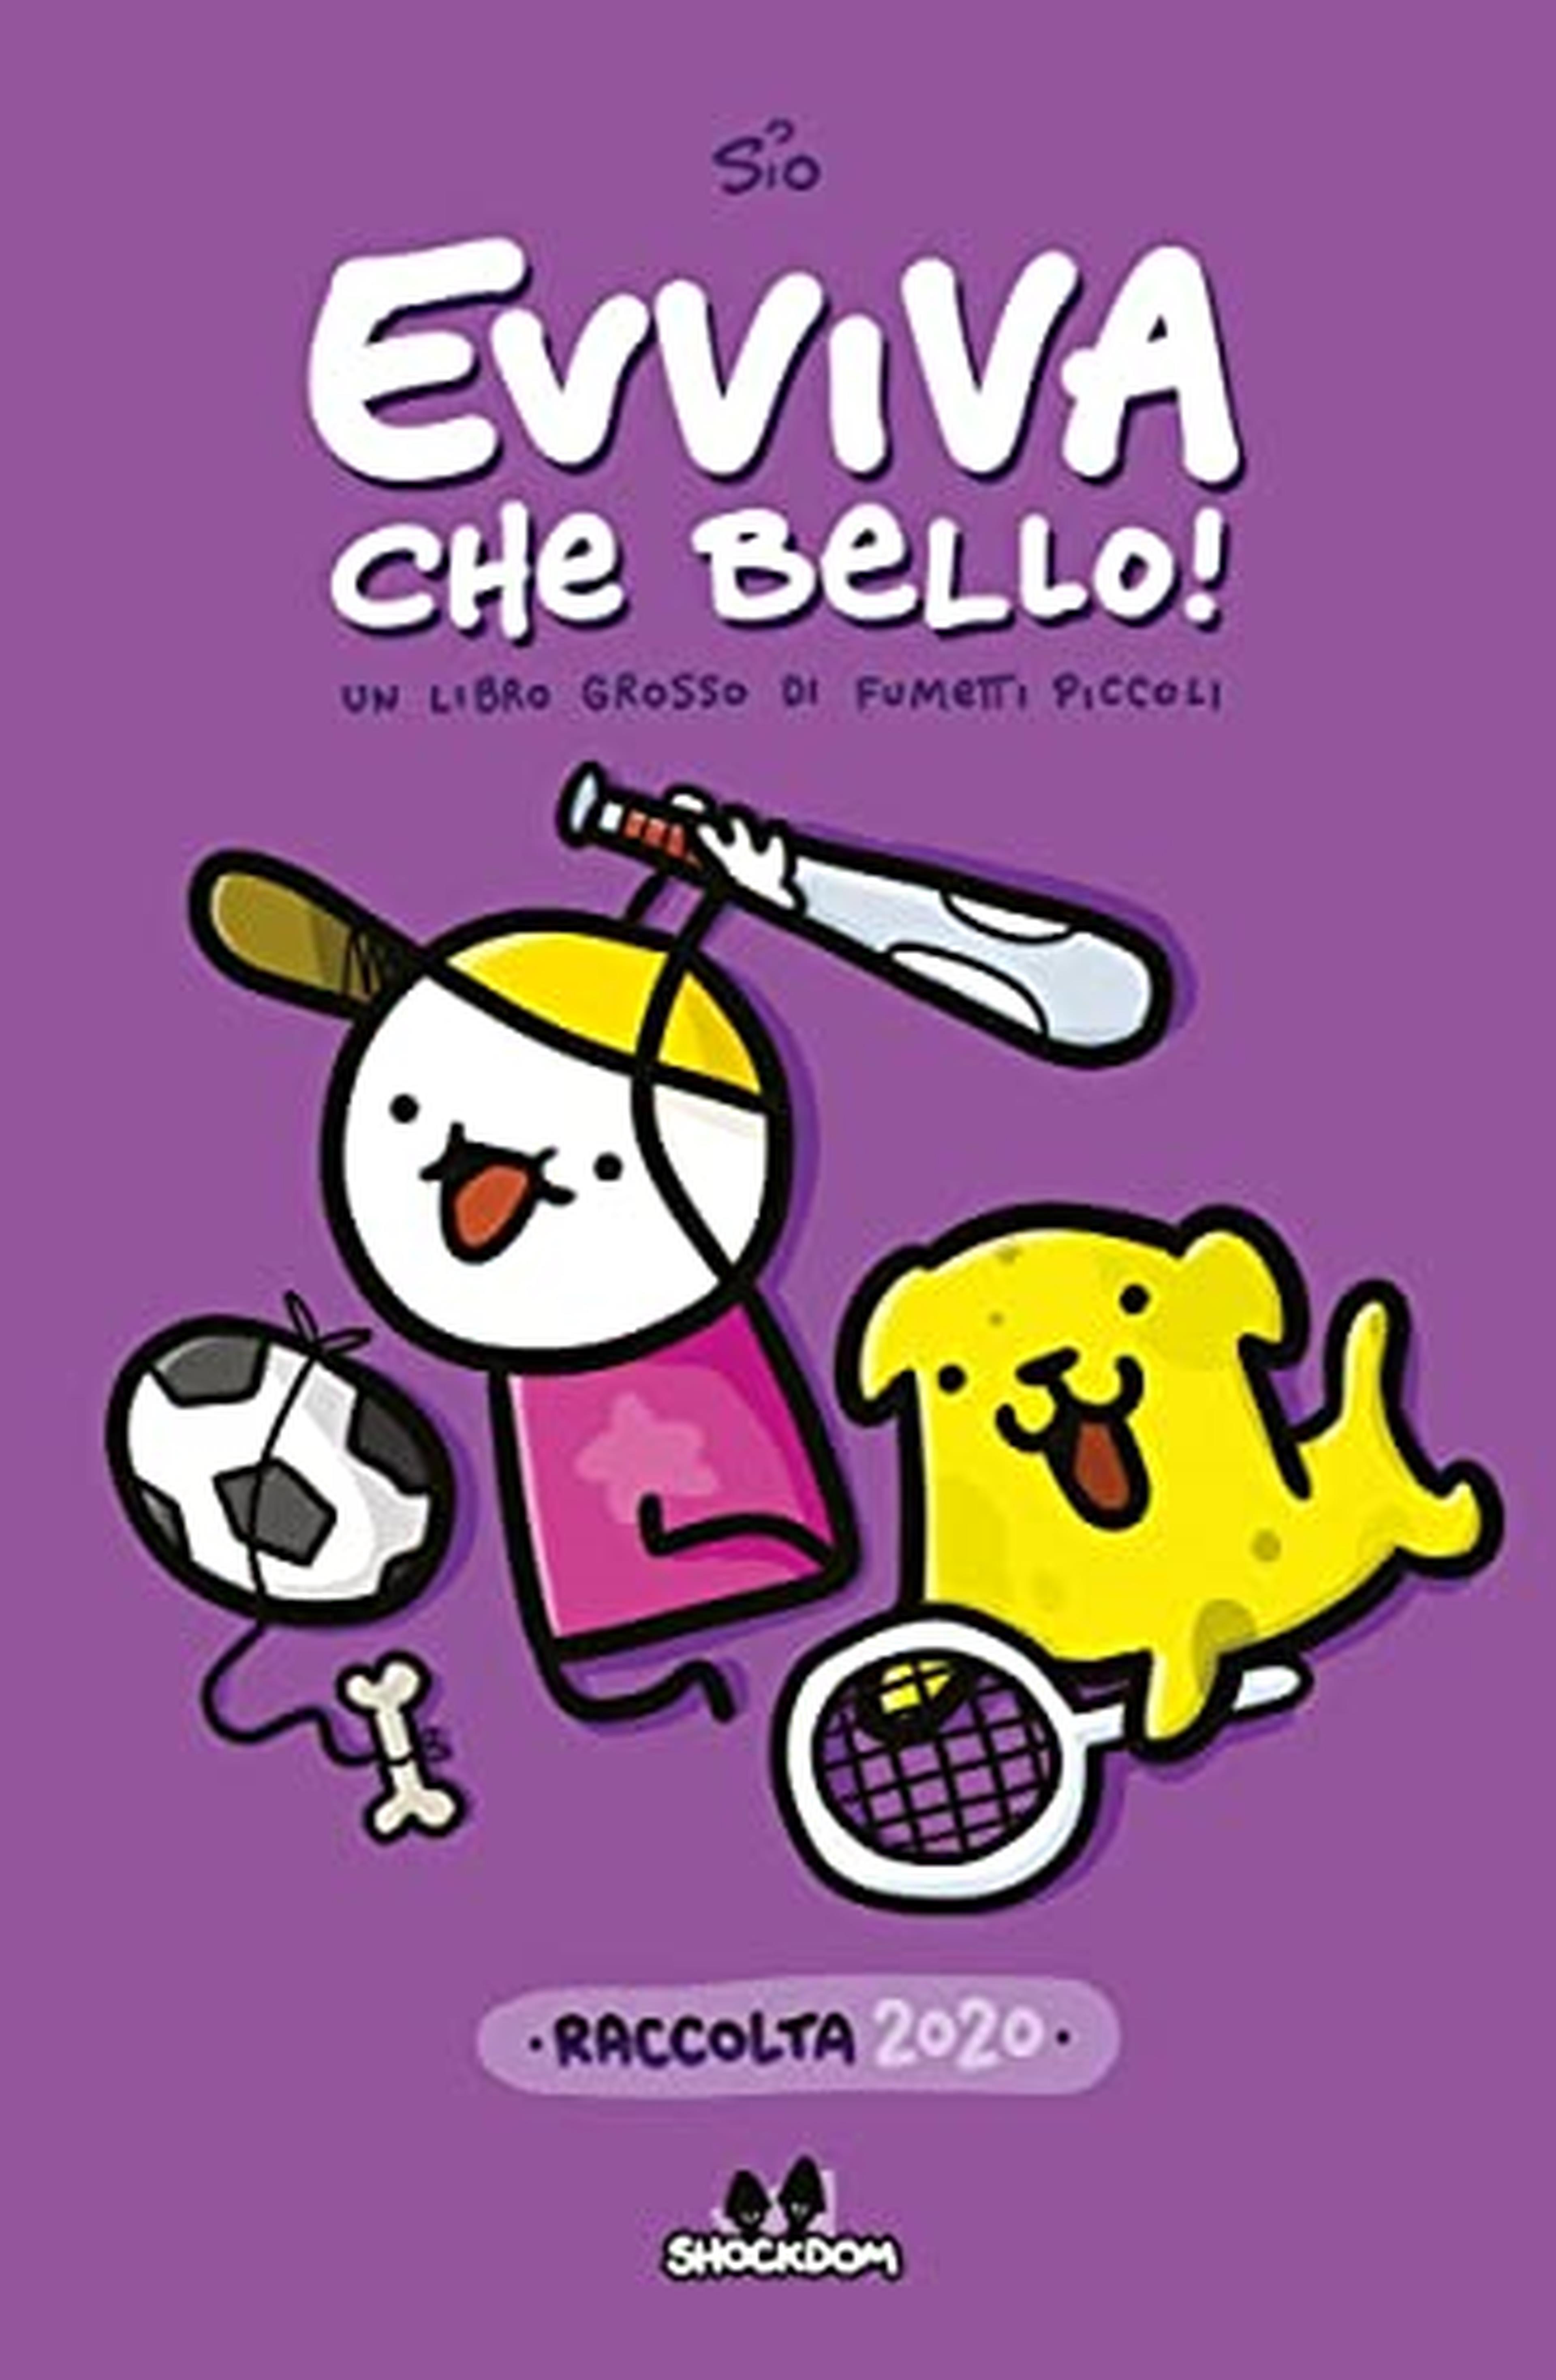 Evviva che bello! Raccolta 2020: Italian edition